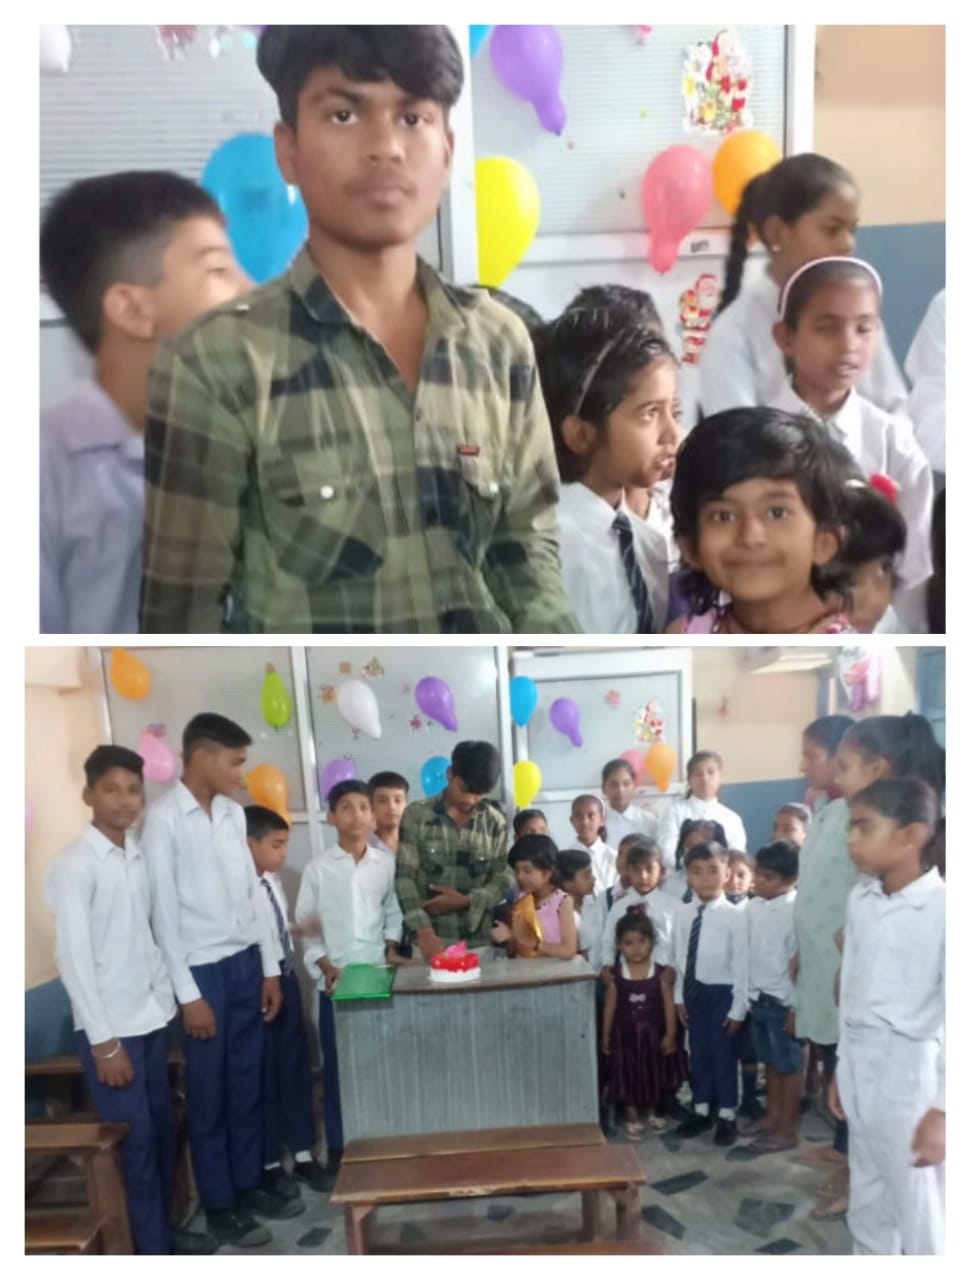 राजीव गांधी मैमोरियल पब्लिक स्कूल में मनाया गया छात्र का जन्मदिन